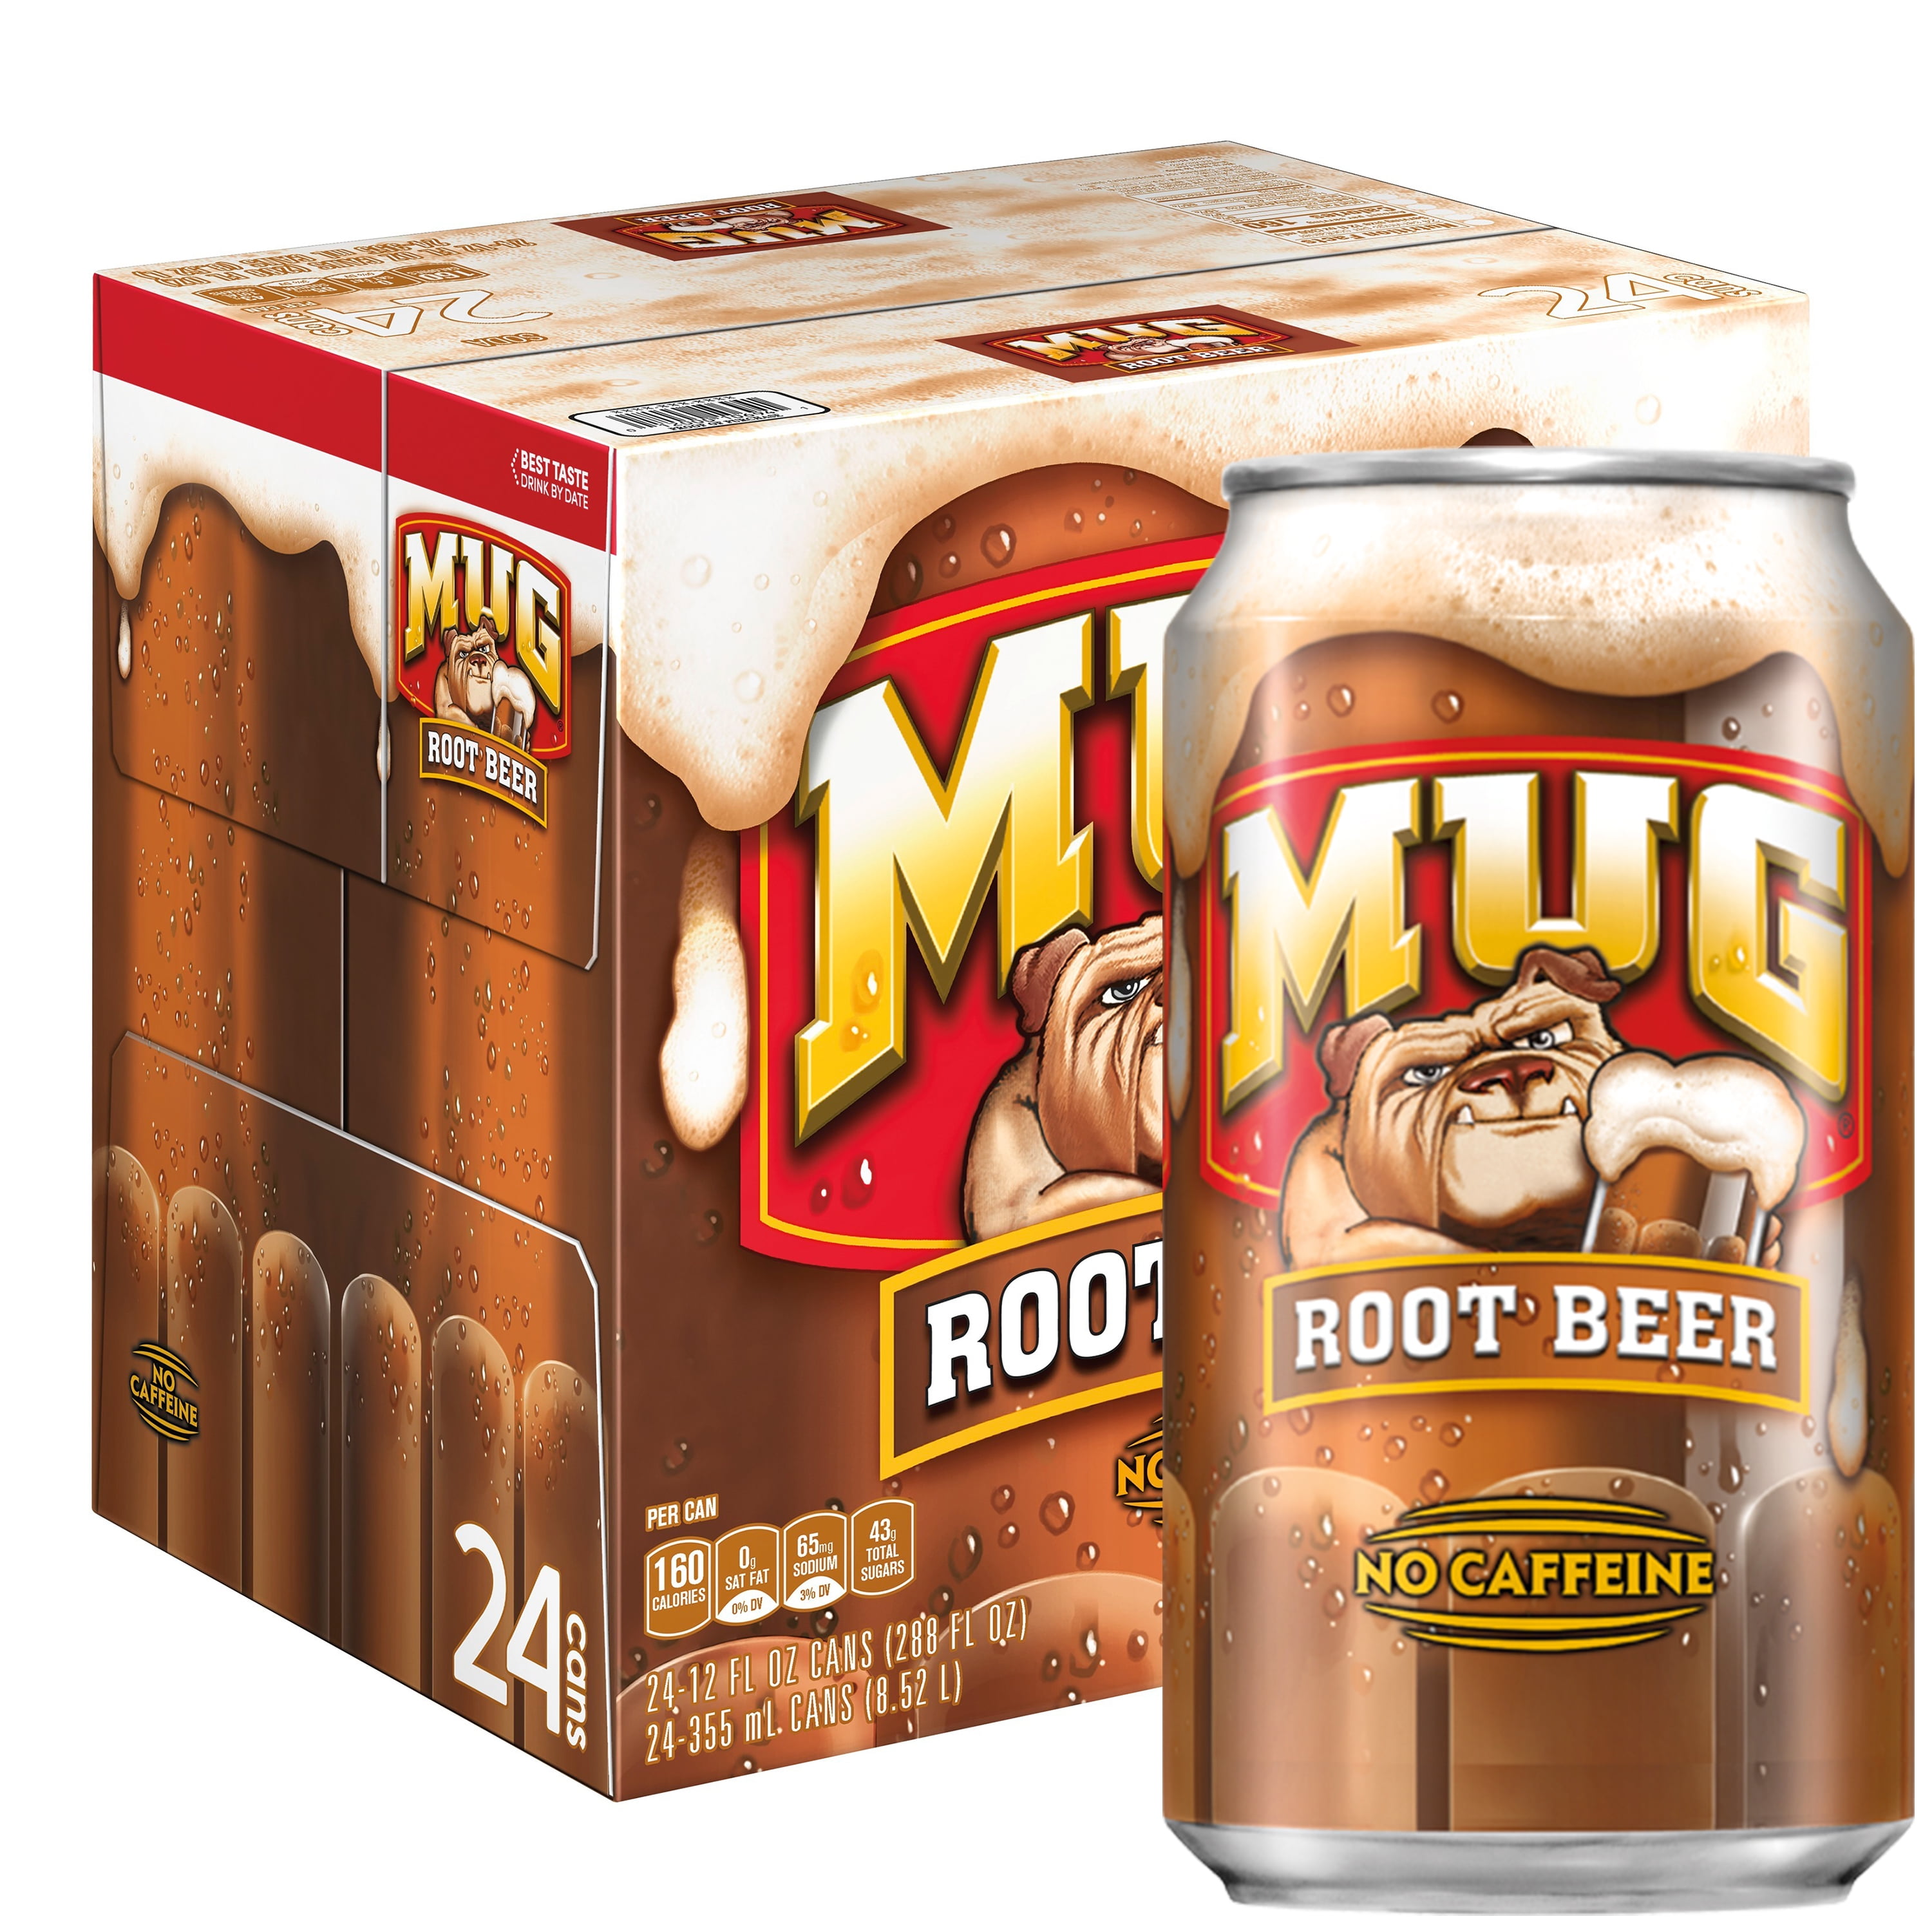 Mug Root Beer Review